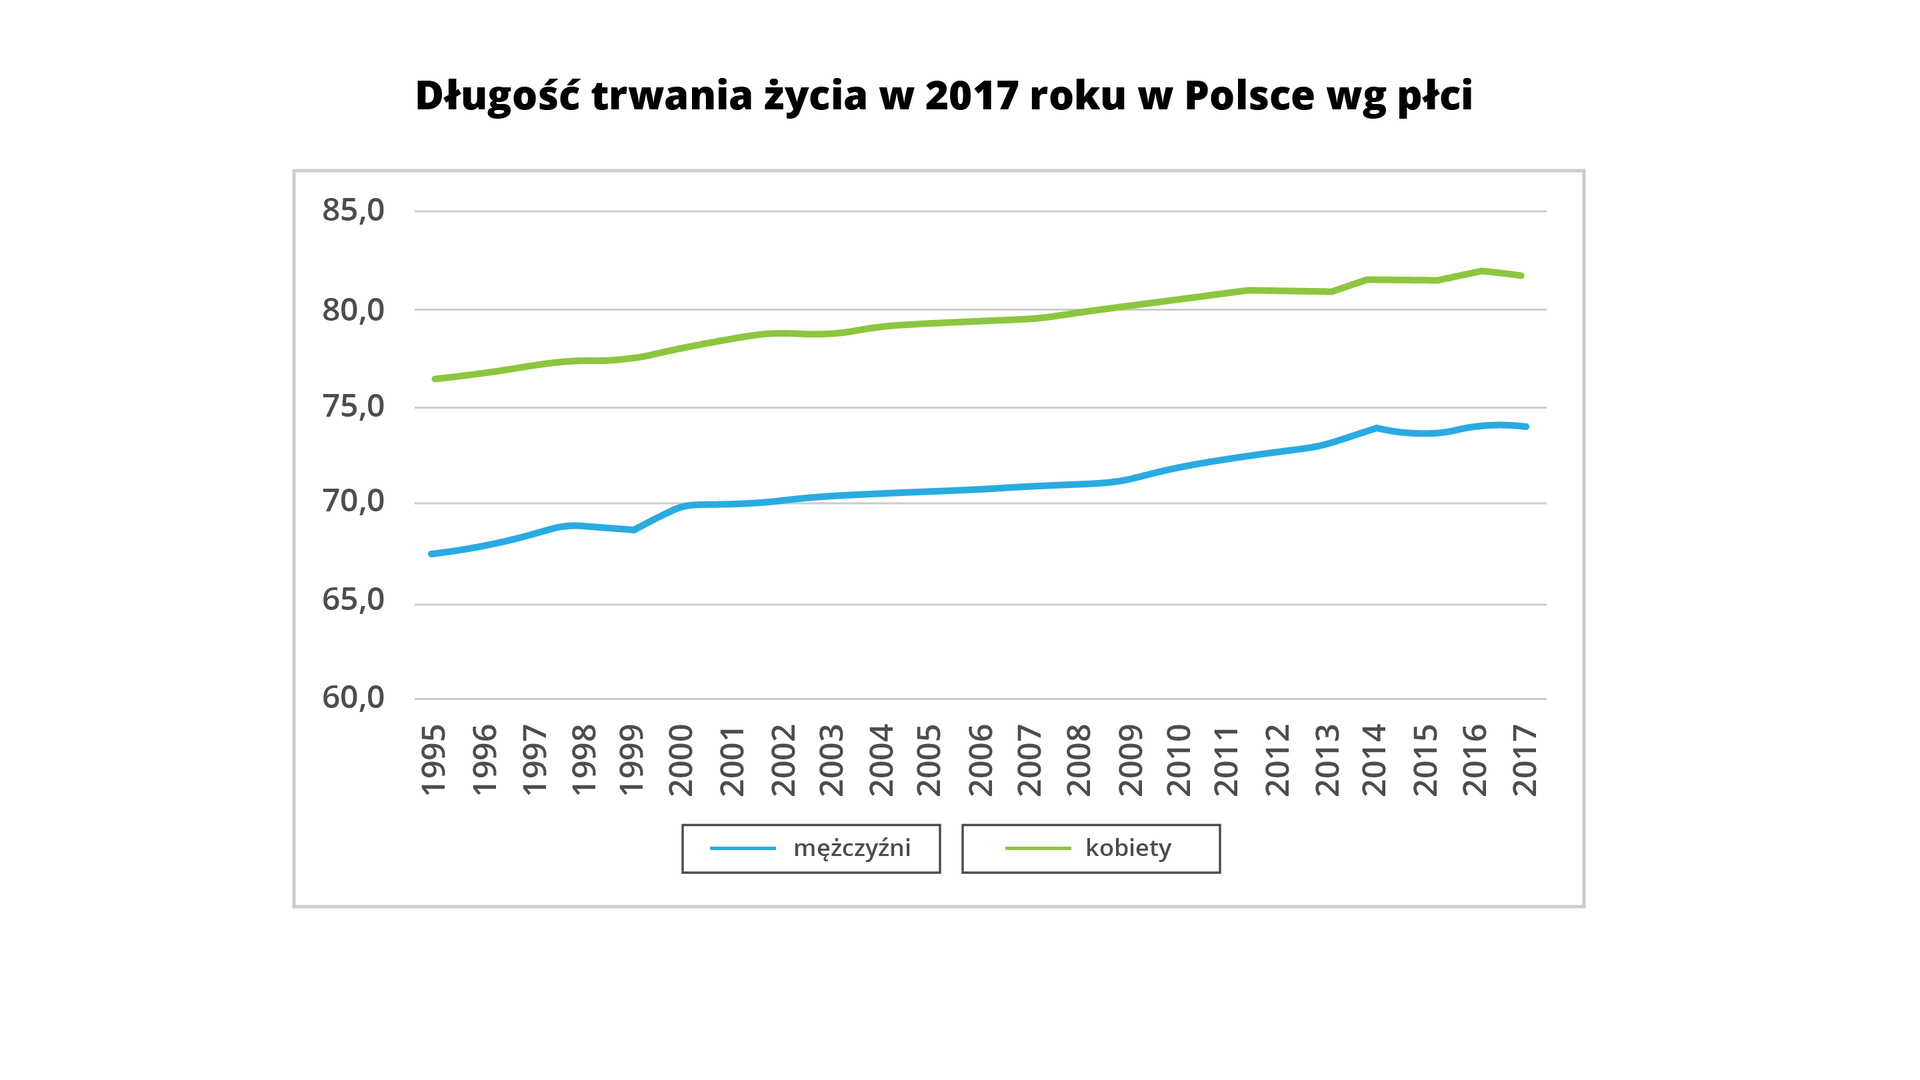 Wykres przedstawia długość trwania życia w 2017 roku w Polsce według płci. Na osi X podano lata od 1995 do 2017, na osi Y wiek od 60 do 85 lat. Na wykresie są dwie krzywe, dotyczą mężczyzn i kobiet. Krzywa dotycząca mężczyzn rozpoczyna się w 1995 roku, przyjmując wartość około 67,5. Następnie krzywa w kolejnych latach biegnie w górę nad osią X, osiągając wartość około 69 w 2017 roku. Druga krzywa dotyczy kobiet, biegnie nad krzywą prezentującą mężczyzn. Rozpoczyna się w 1995 roku z wartością około 76 lat, biegnie w górę nad osią X, osiągając wartość 82 lata w 2017 roku.  